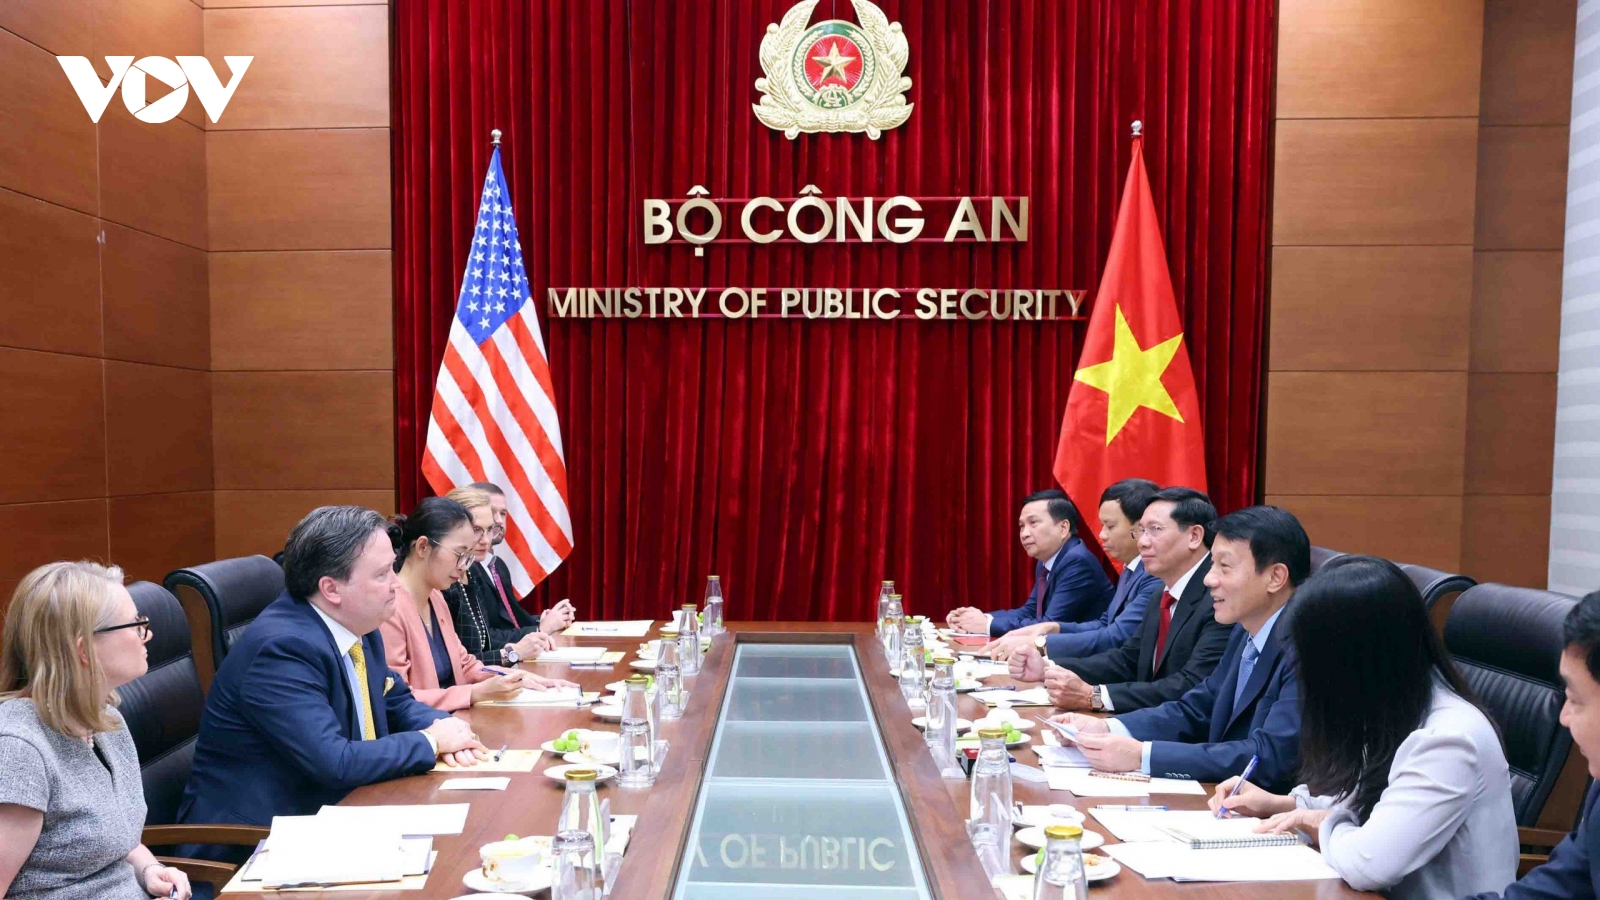 Bộ trưởng Công an Lương Tam Quang tiếp Đại sứ Hoa Kỳ và Nhật Bản tại Việt Nam